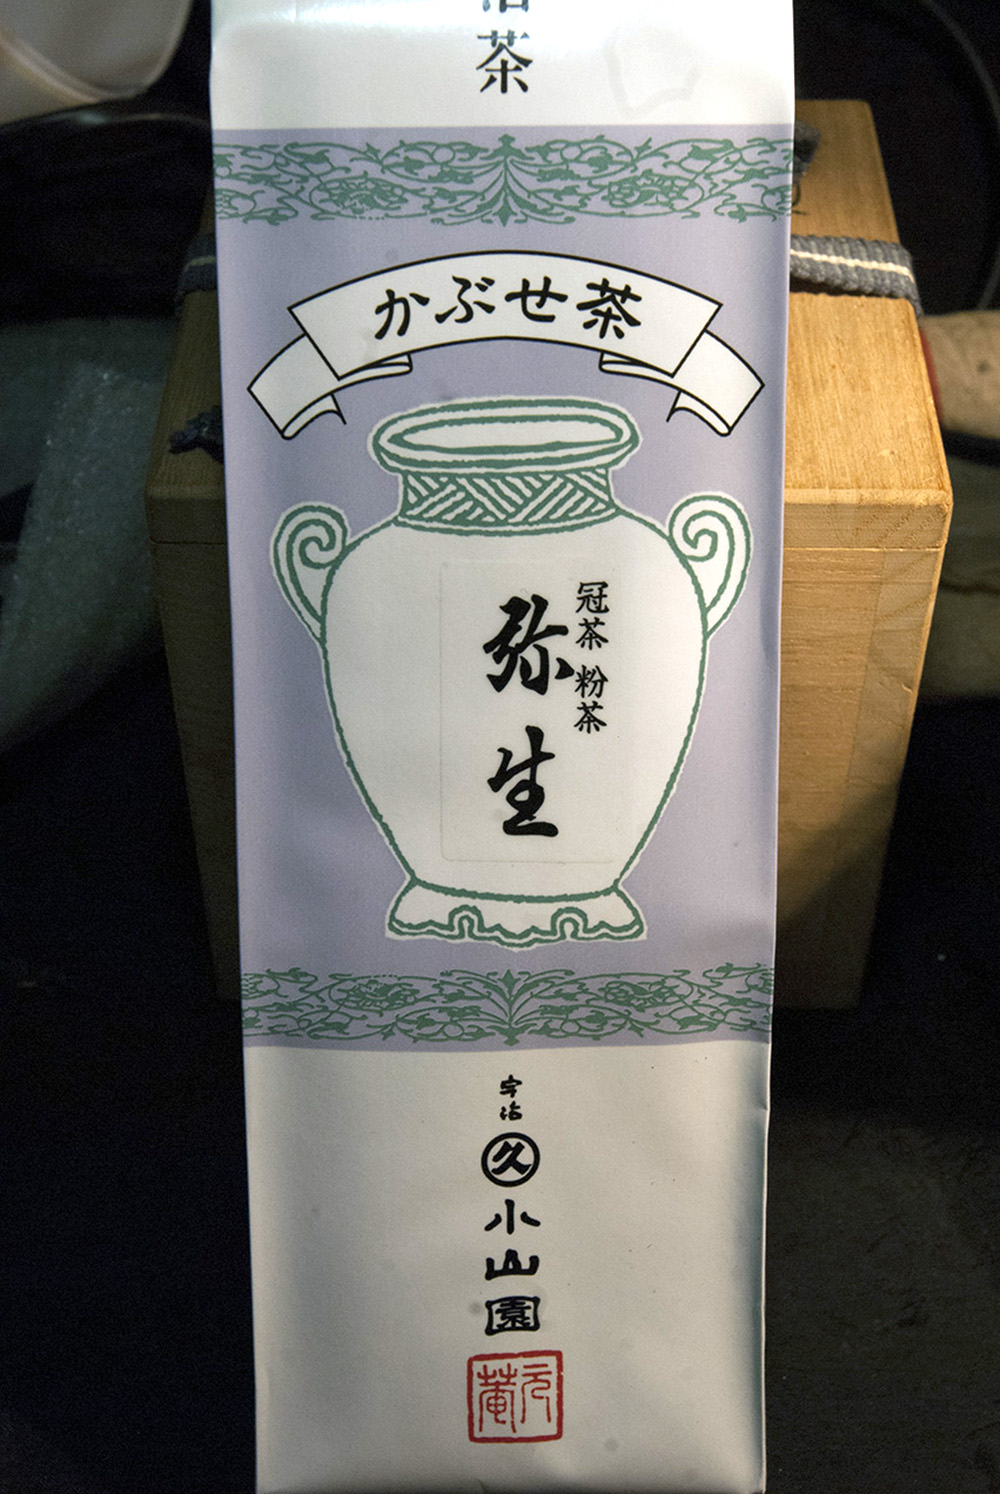 Marukyu Koyamaen Kabusecha Yayoi japanese green tea